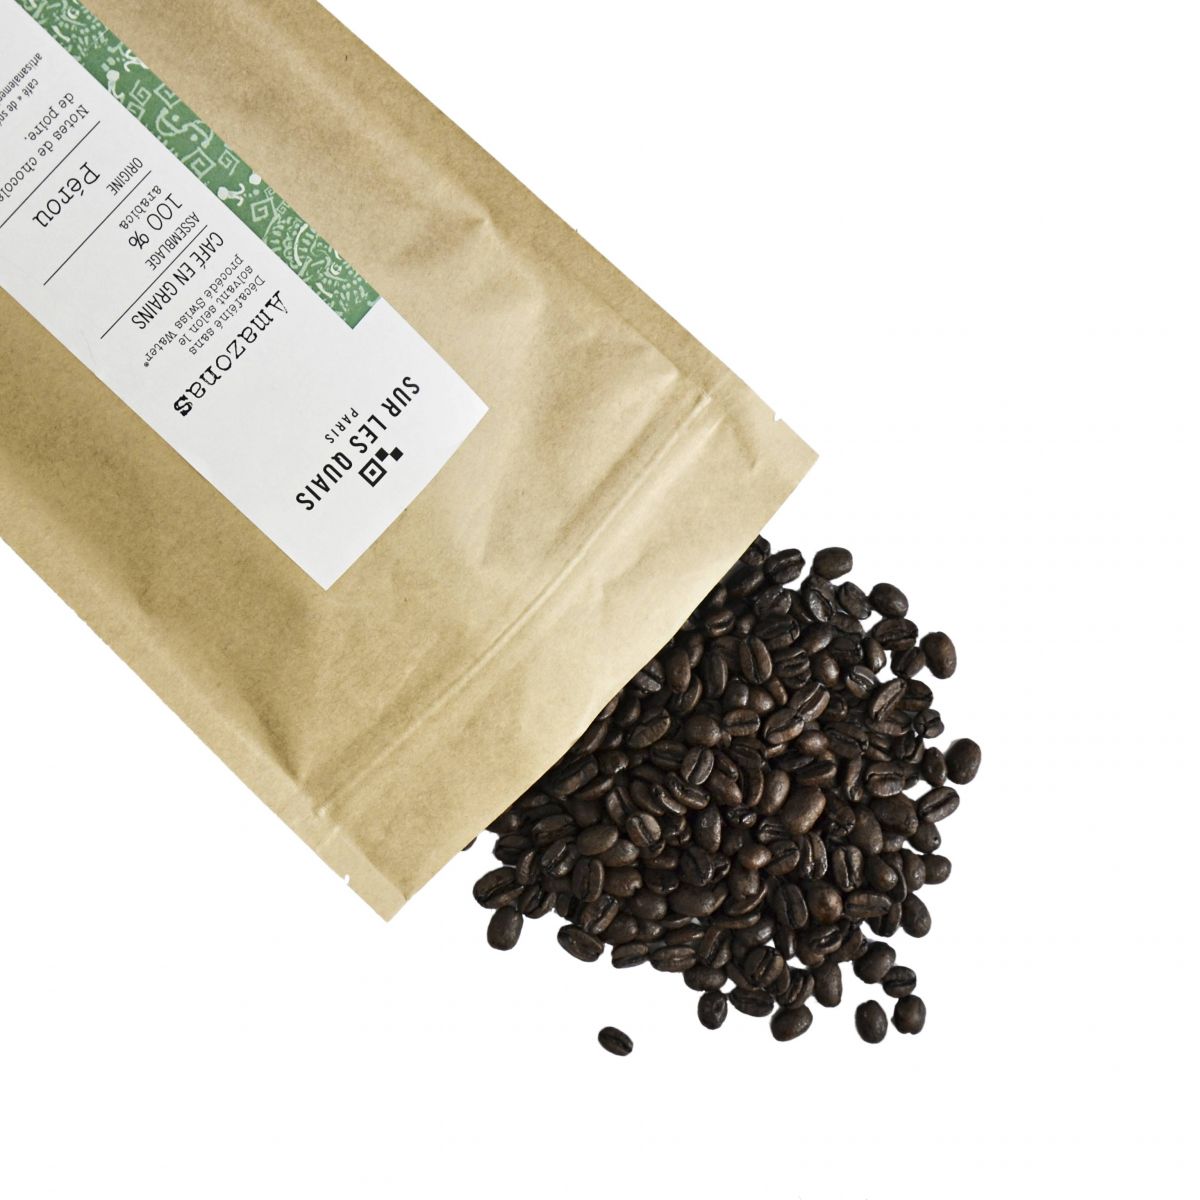 Café en grains décaféiné 250 g